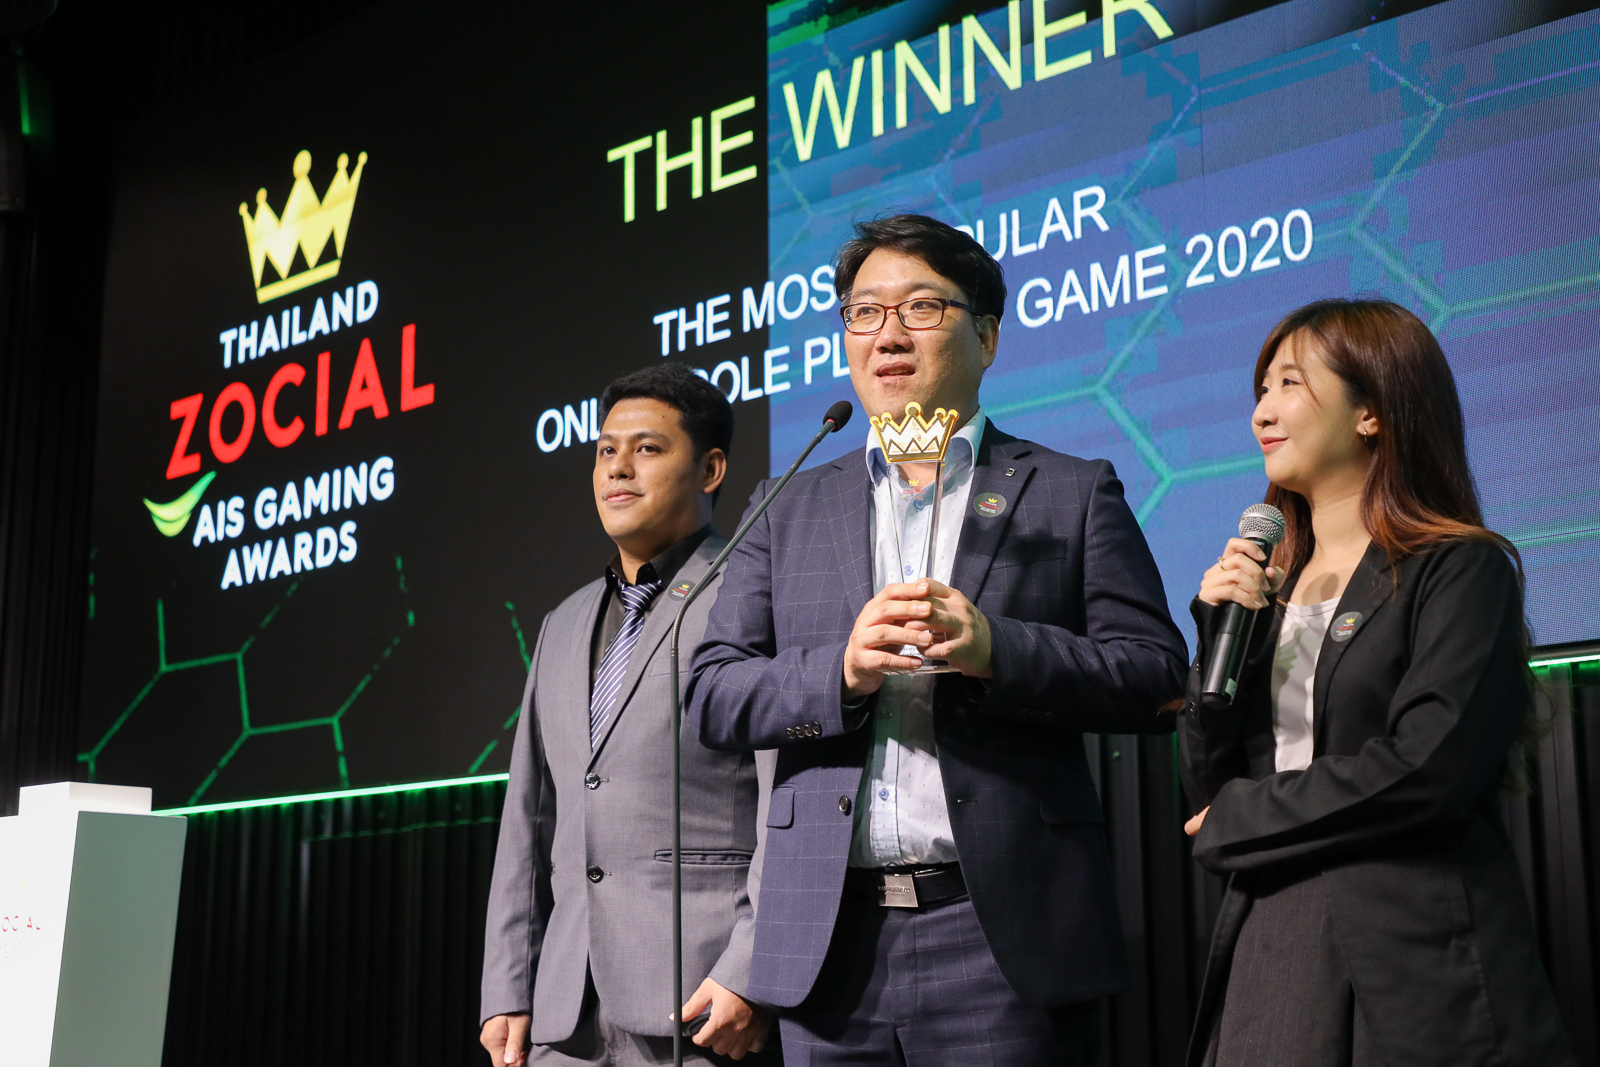 กราวิตี้ เกม เทค ครองใจเกมเมอร์ คว้ารางวัล The Most Popular Game Publisher ในงาน Thailand Zocial AIS Gaming Awards 2020